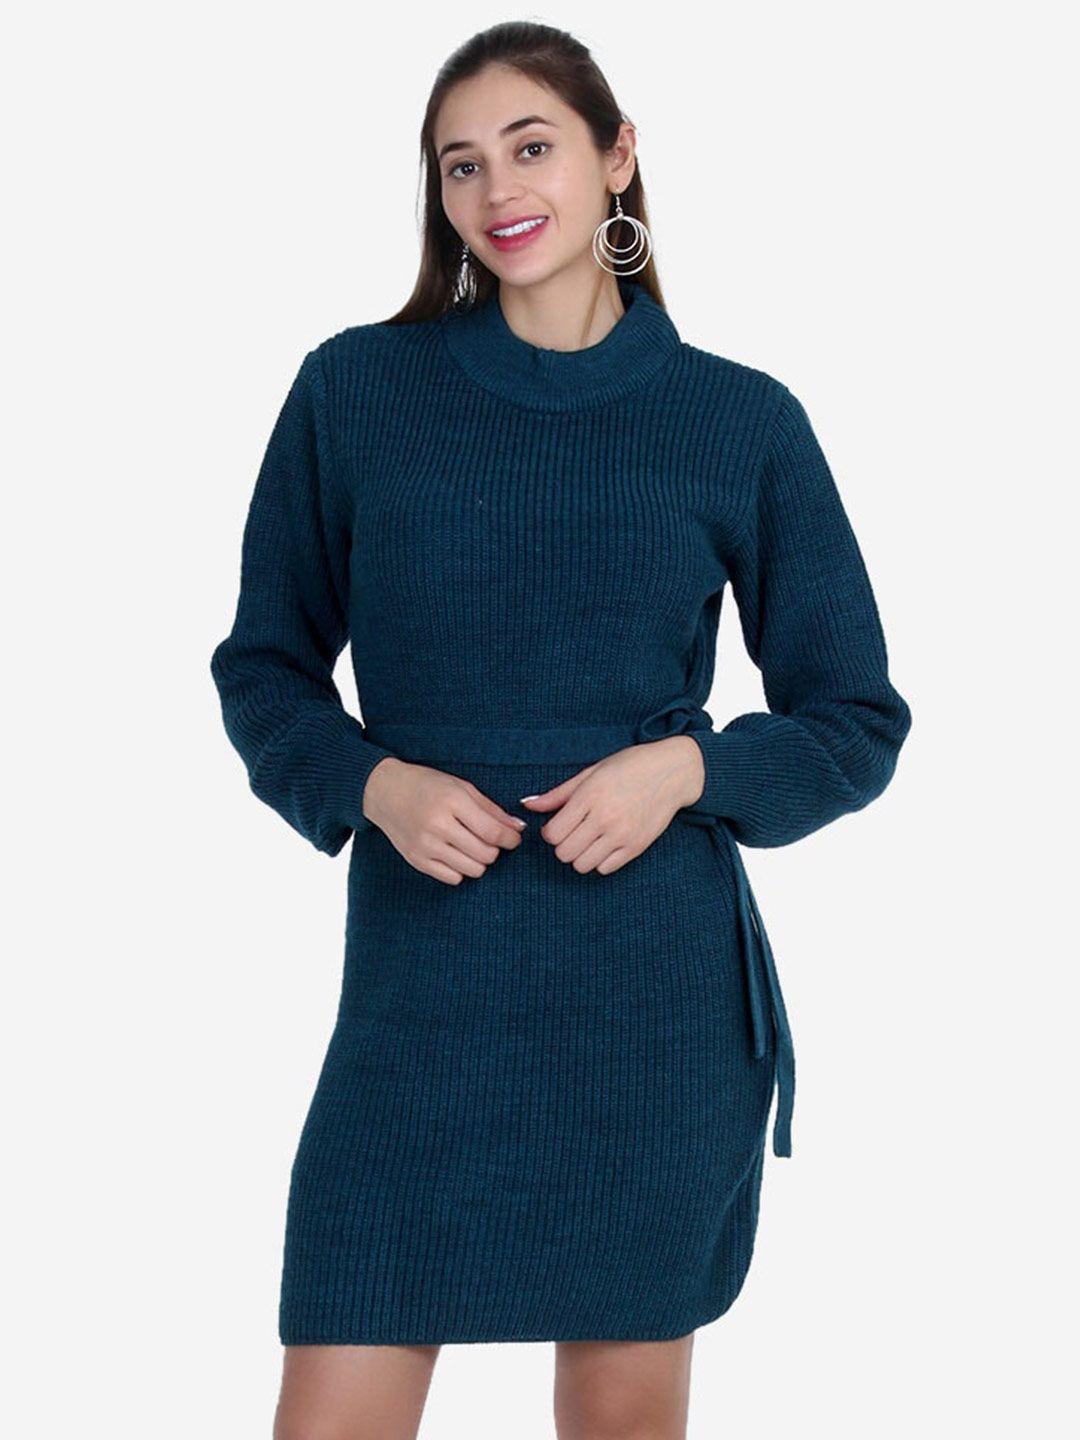 joe hazel blue striped sweater dress